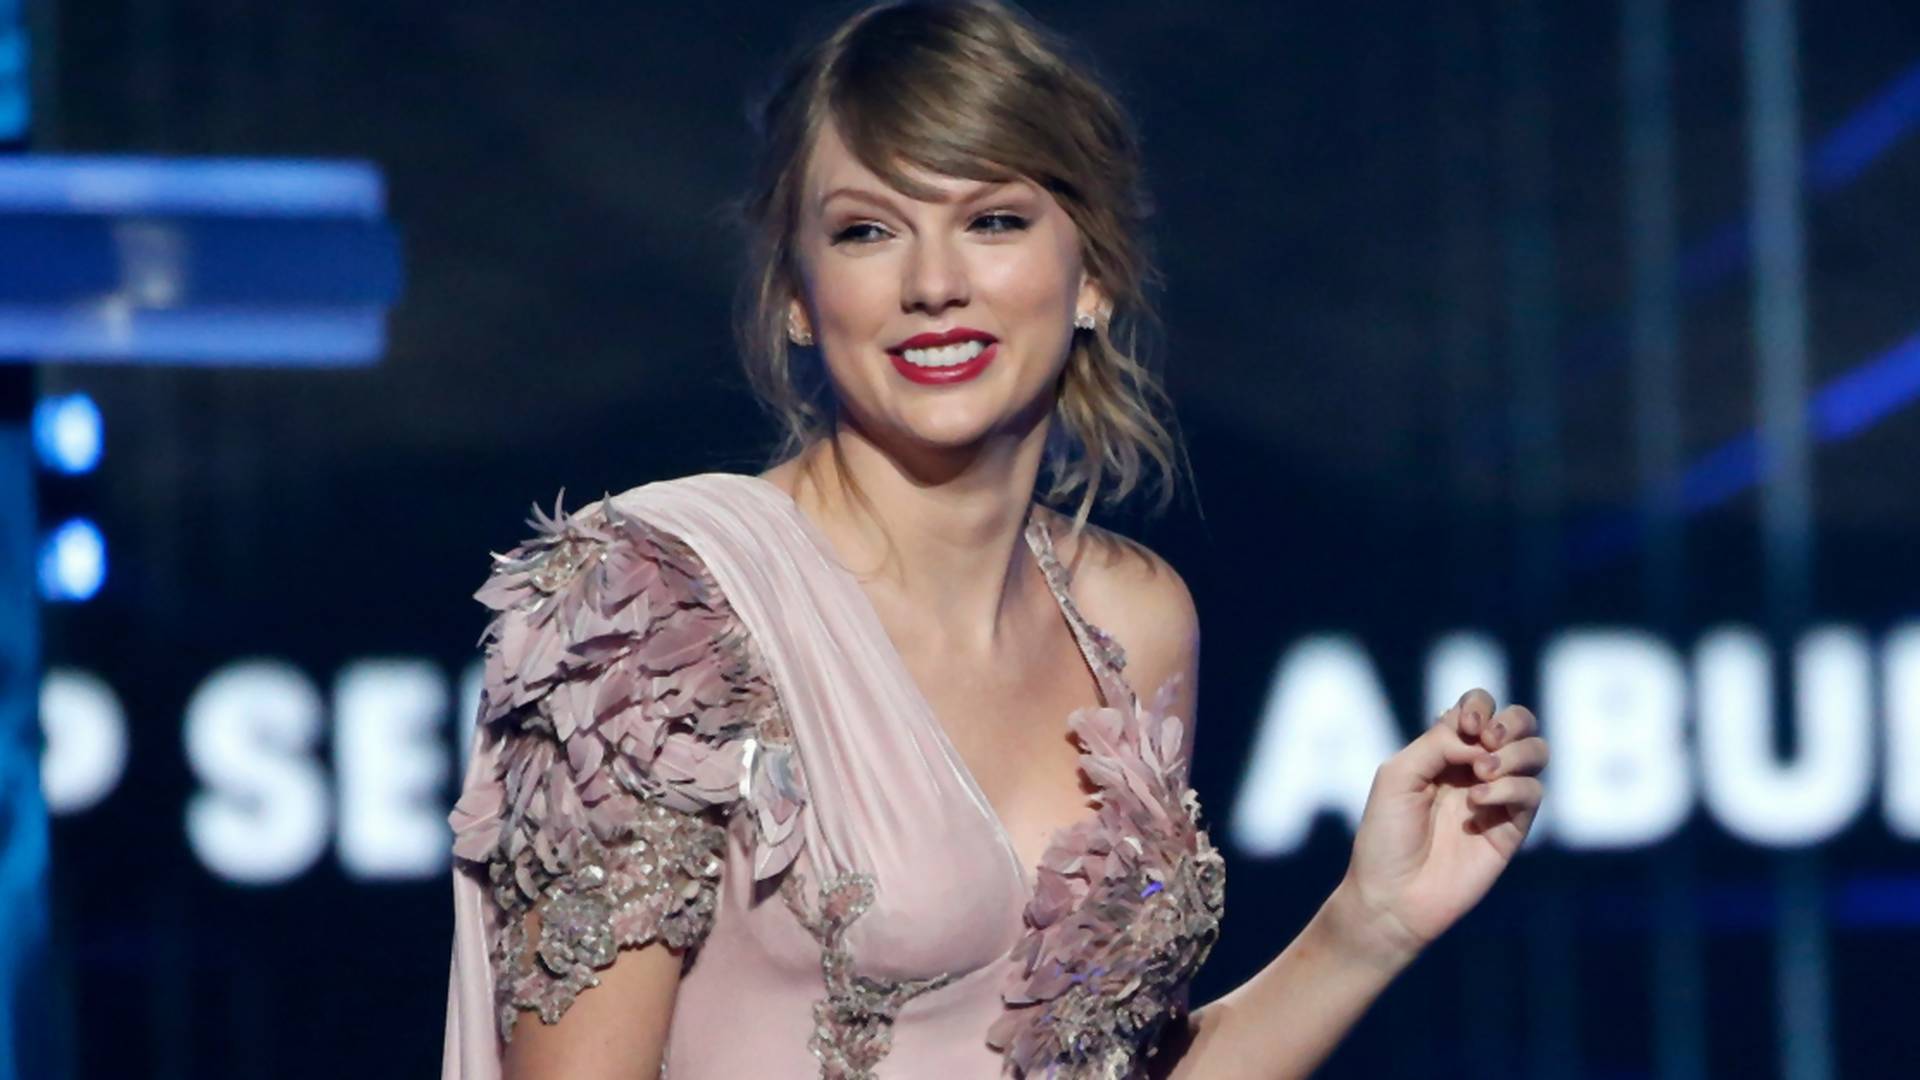 Taylor Swift svojej obdivovateľke pomohla s úzkosťou. 8 ľudí opísalo svoje stretnutia s celebritami